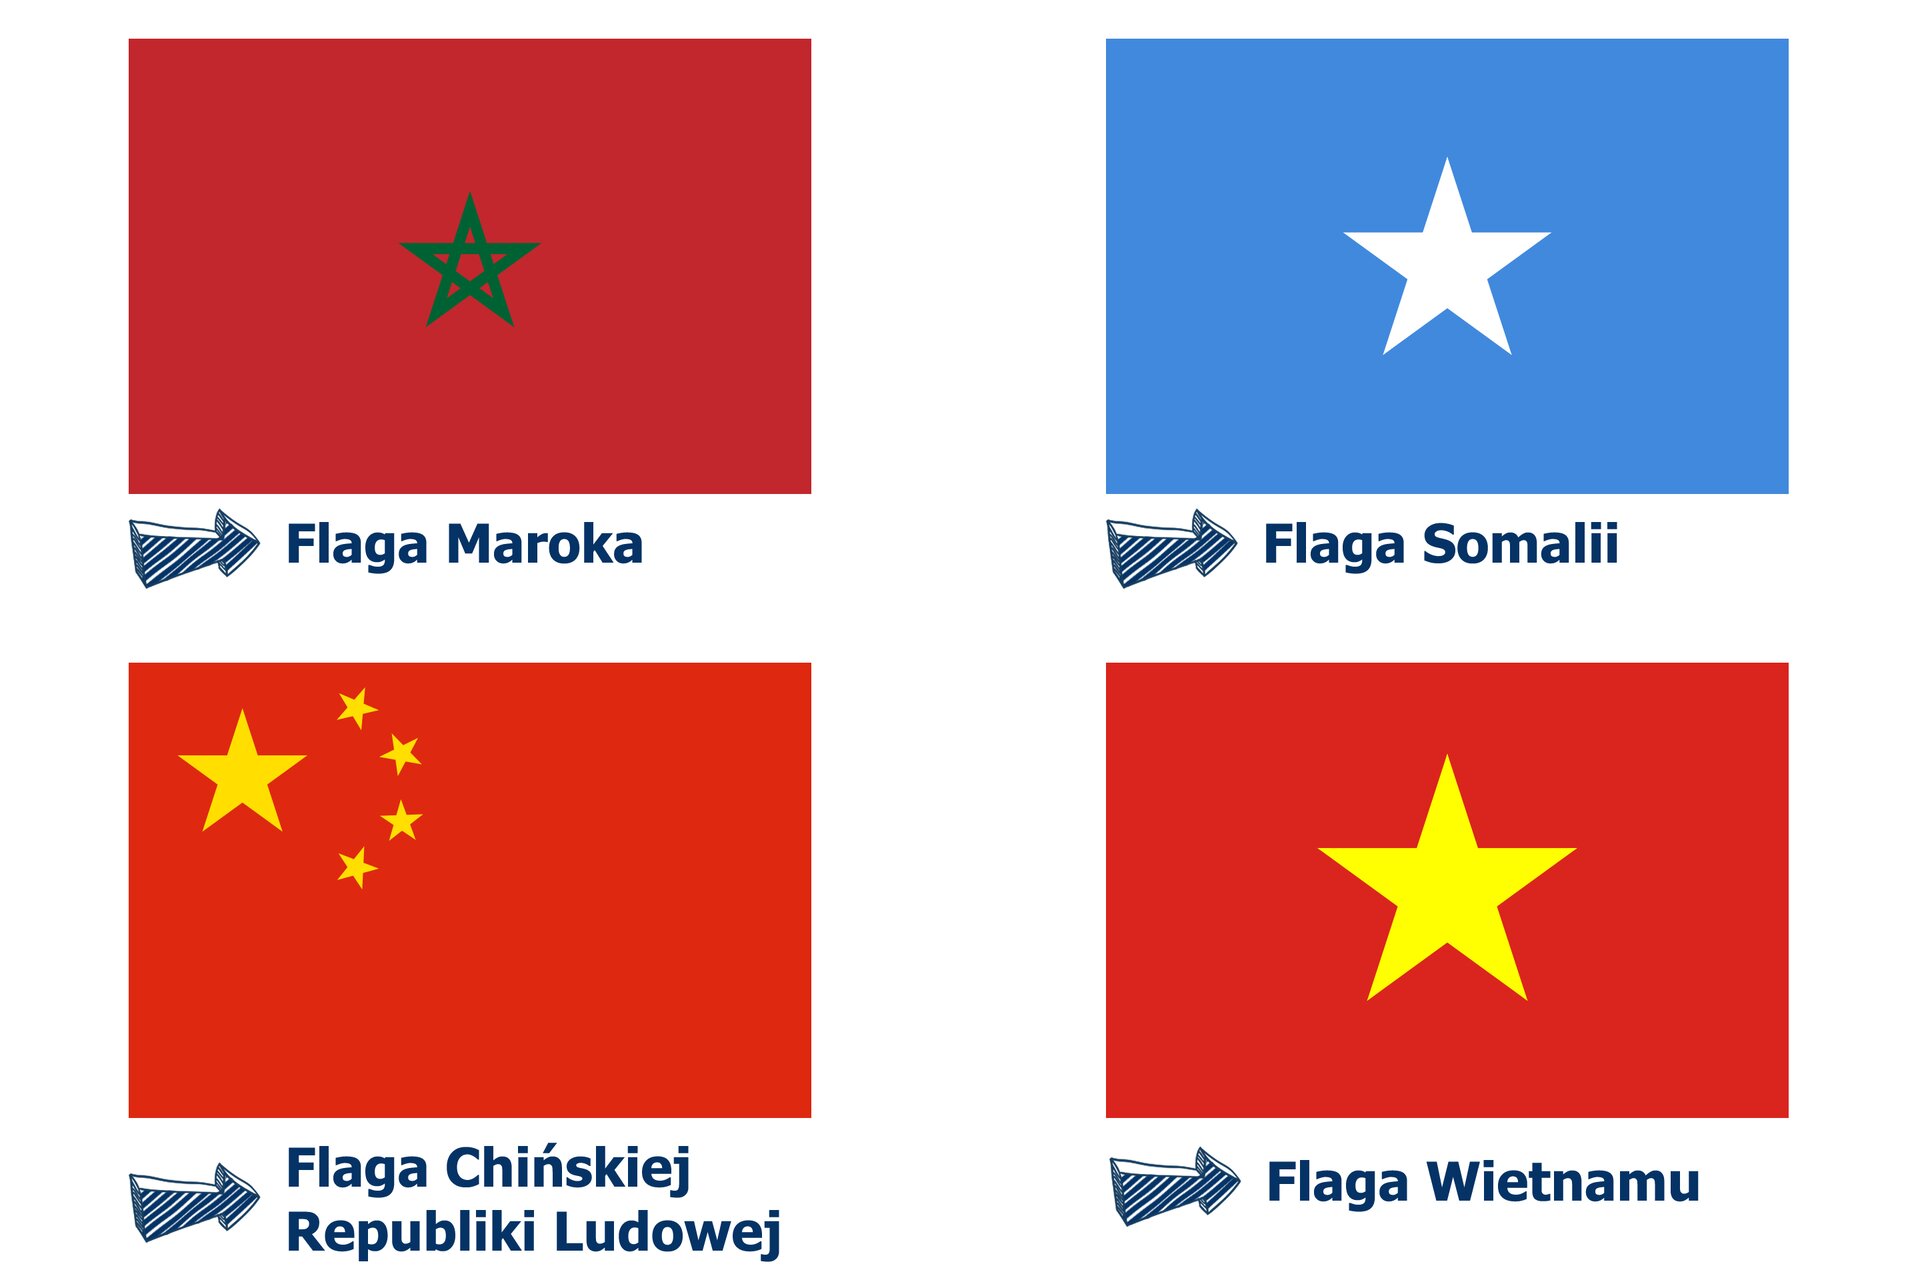 Rysunki prostokątów z gwiazdami pięcioramiennymi, które ilustrują flagi państw. Flaga Maroka – na czerwonym tle, w środku złote boki pentagramu. Flaga Somalii – na niebieskim tle, w środku biały pentagram. Flaga Chińskiej Republiki Ludowej – na czerwonym tle, w prawym górnym rogu jeden duży i cztery małe, żółte pentagramy. Flaga Wietnamu – na czerwonym tle, w środku żółty pentagram.